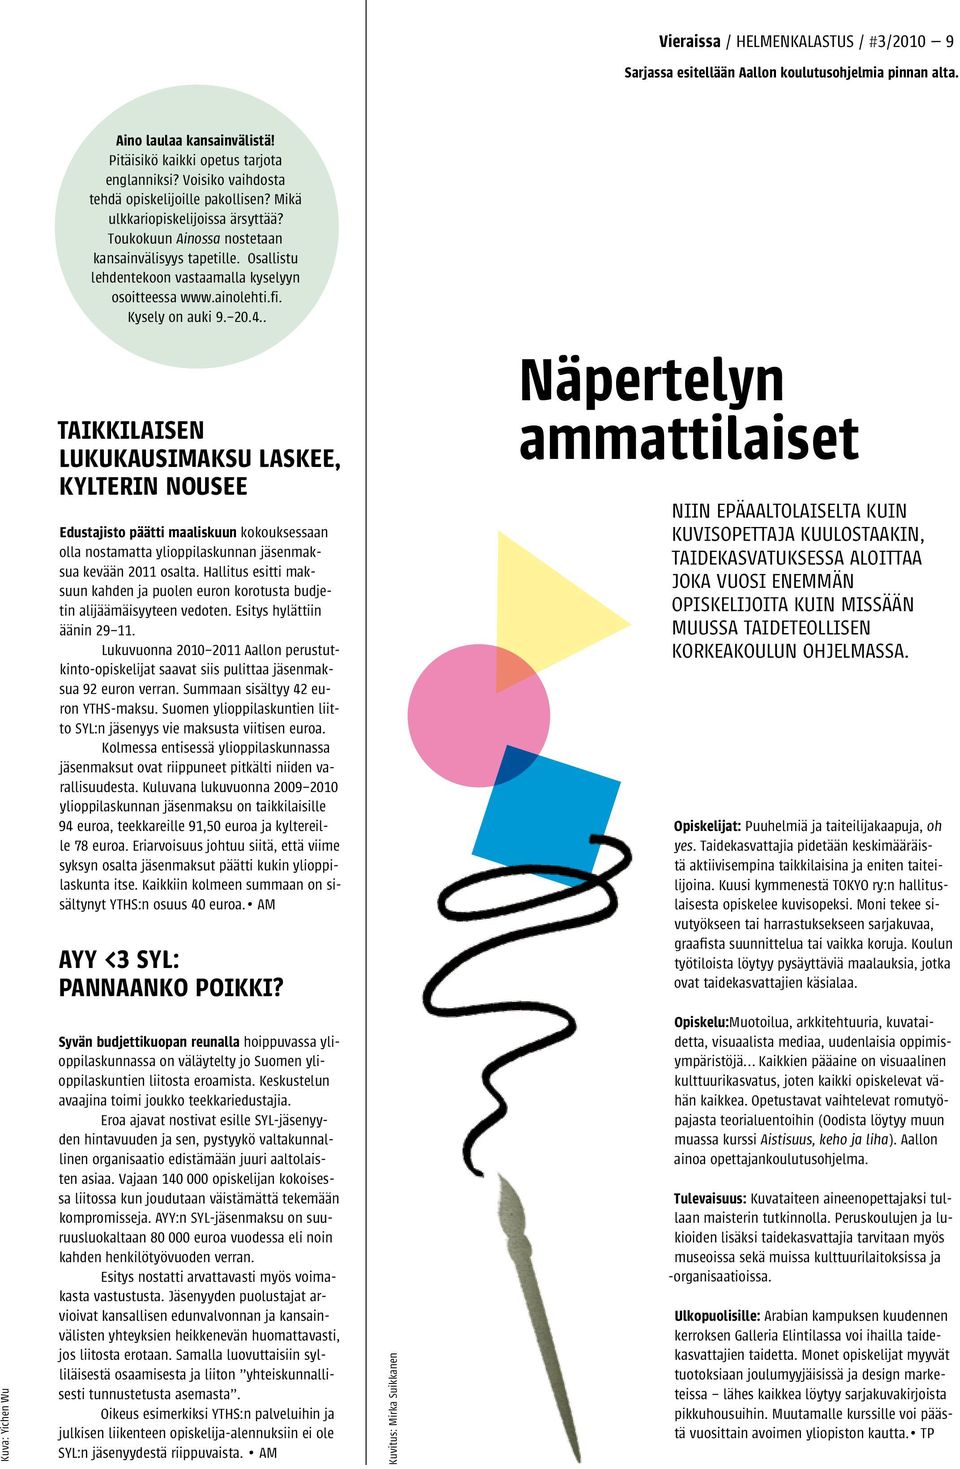 Osallistu lehdentekoon vastaamalla kyselyyn osoitteessa www.ainolehti.fi. Kysely on auki 9. 20.4.